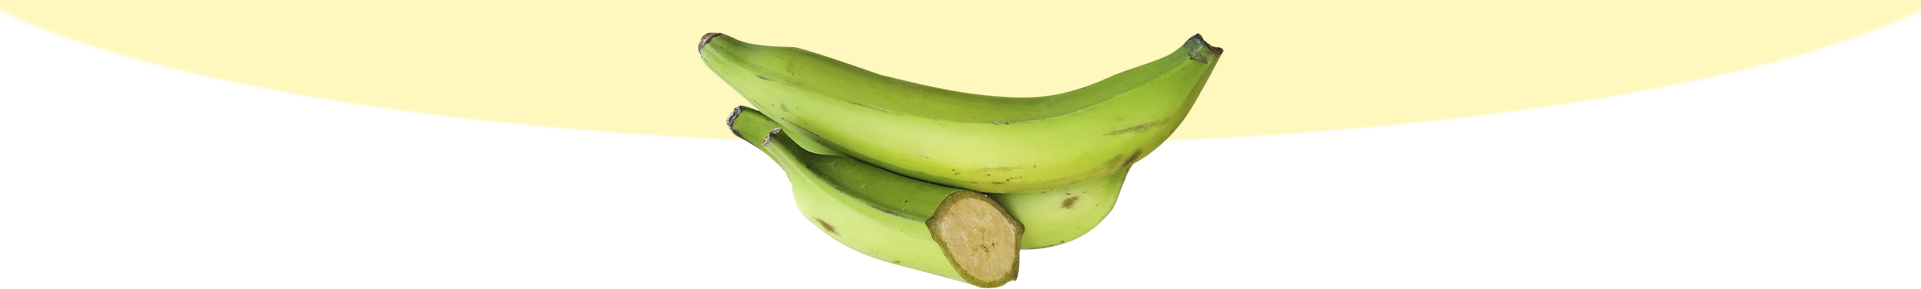 pleca plátano